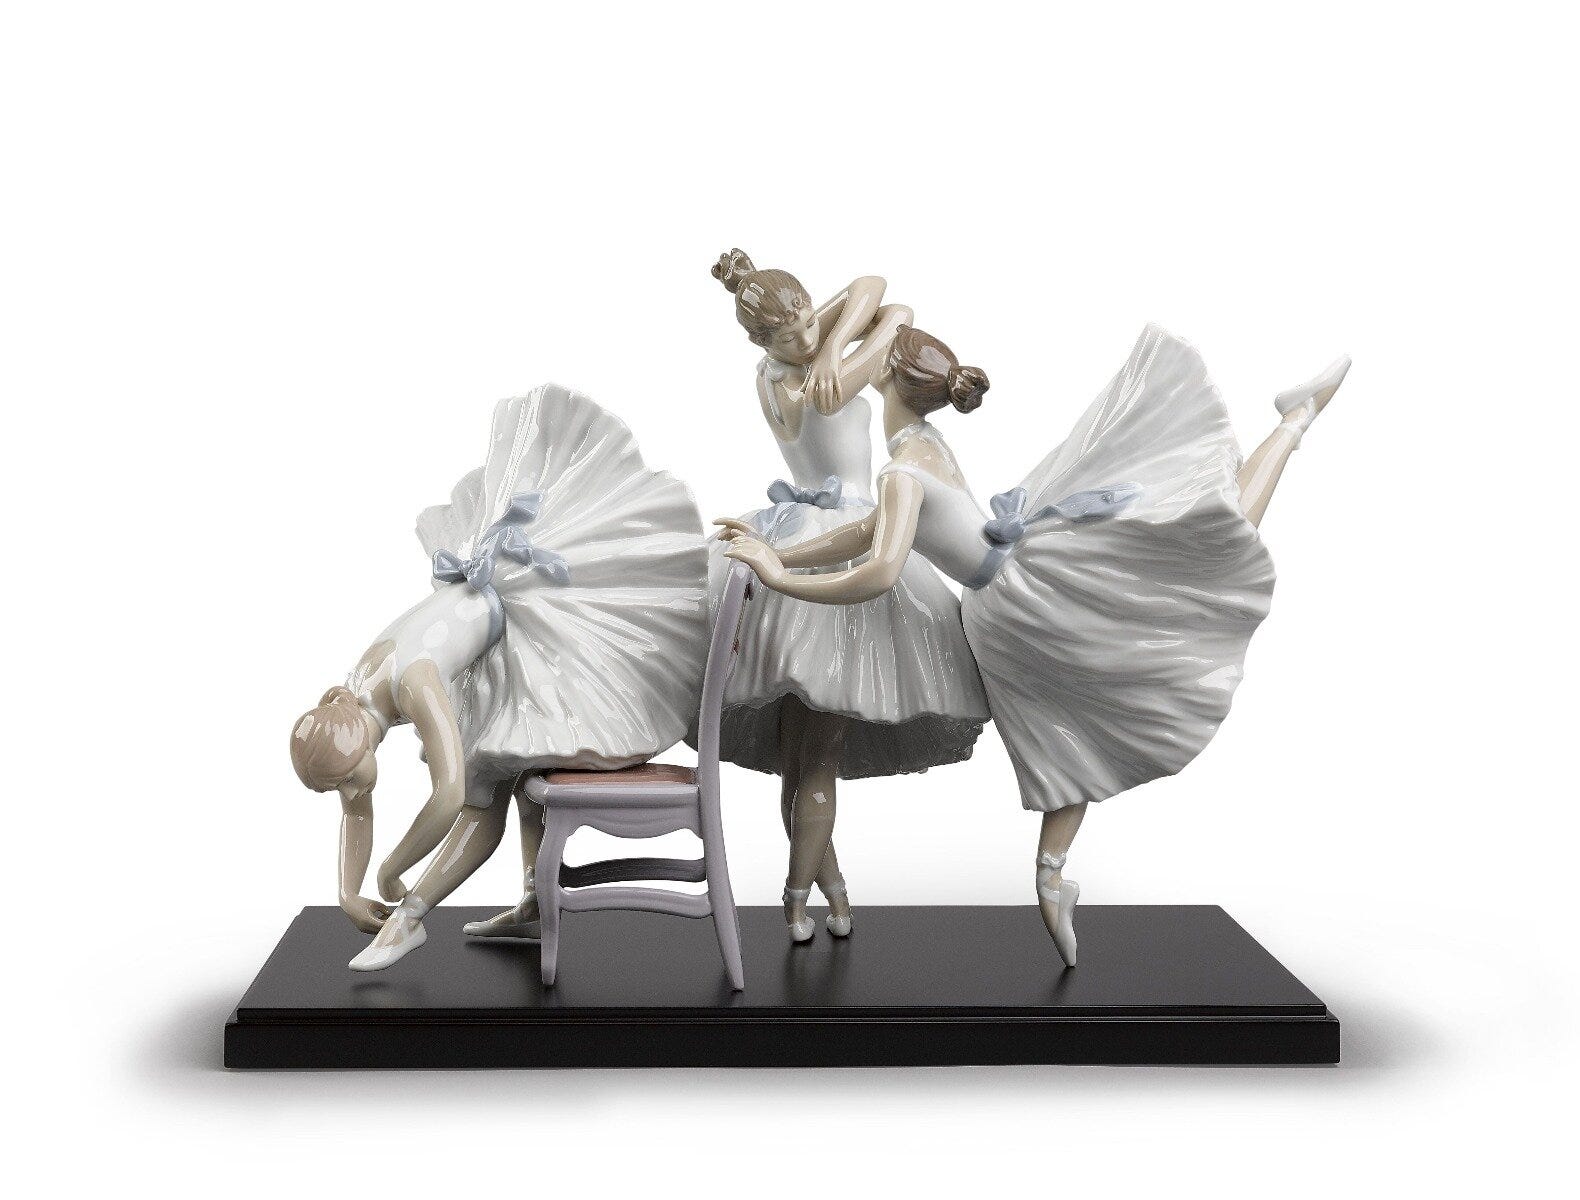 Figurina di balletto dietro le quinte. Edizione limitata